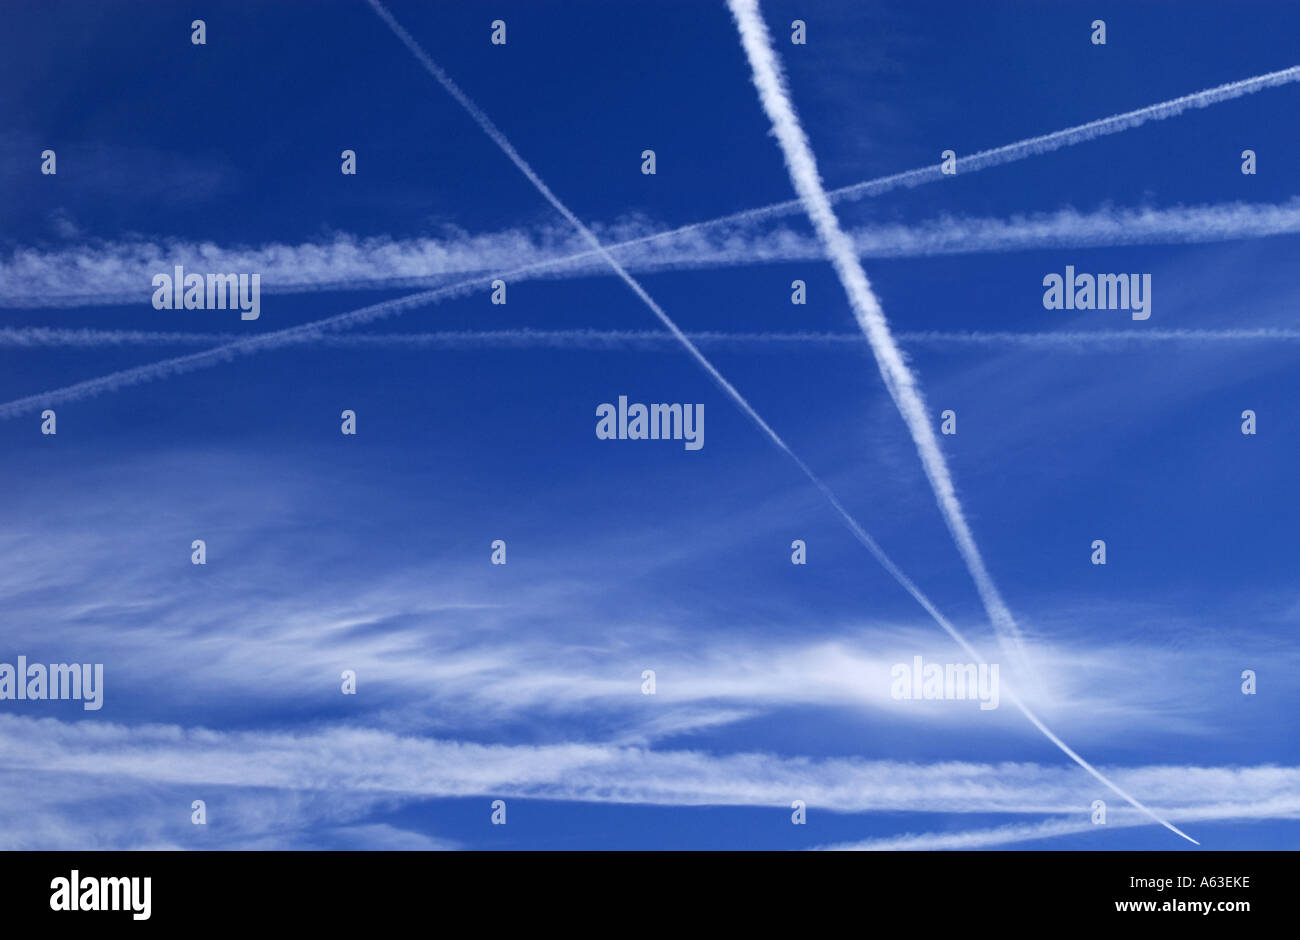 Plane vapour trails across the sky Stock Photo